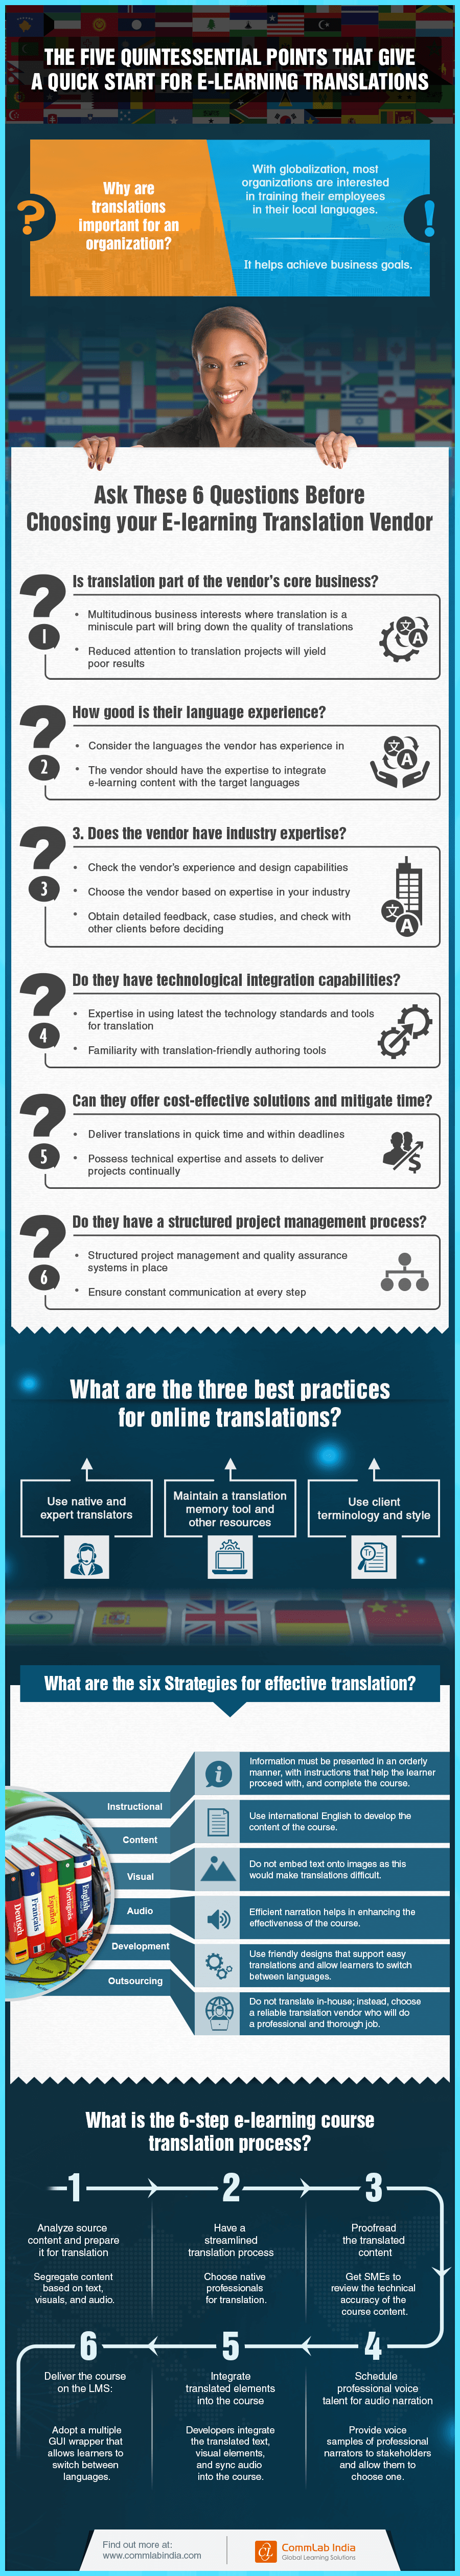 为电子学习翻译提供快速入门的5个典型点[信息图]